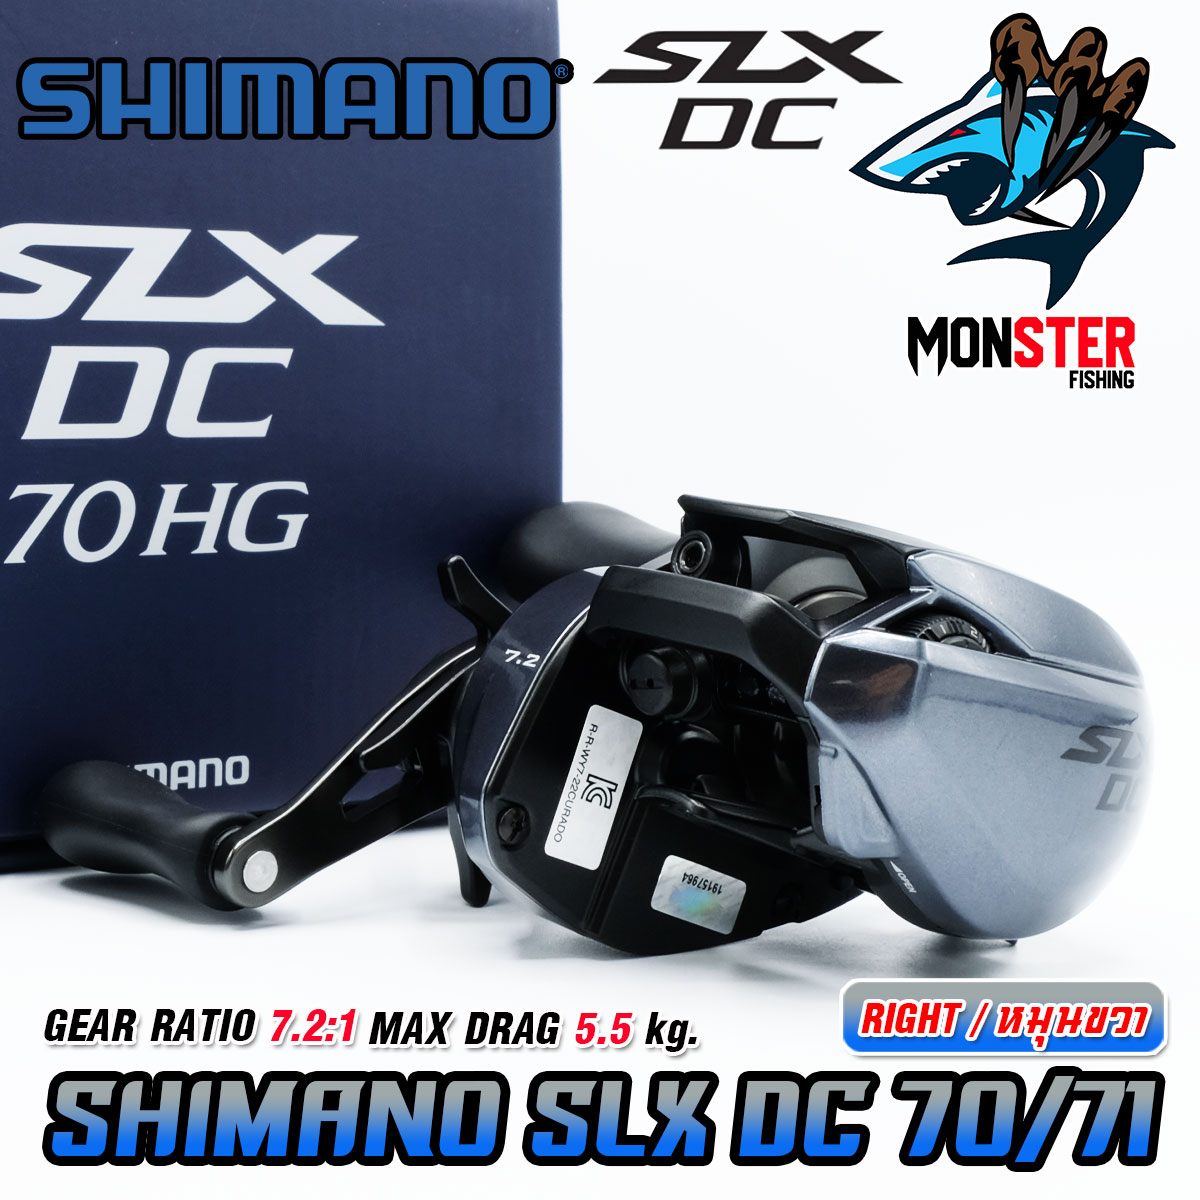 SHIMANO SLX DC Gear Ratio: 7.2:1